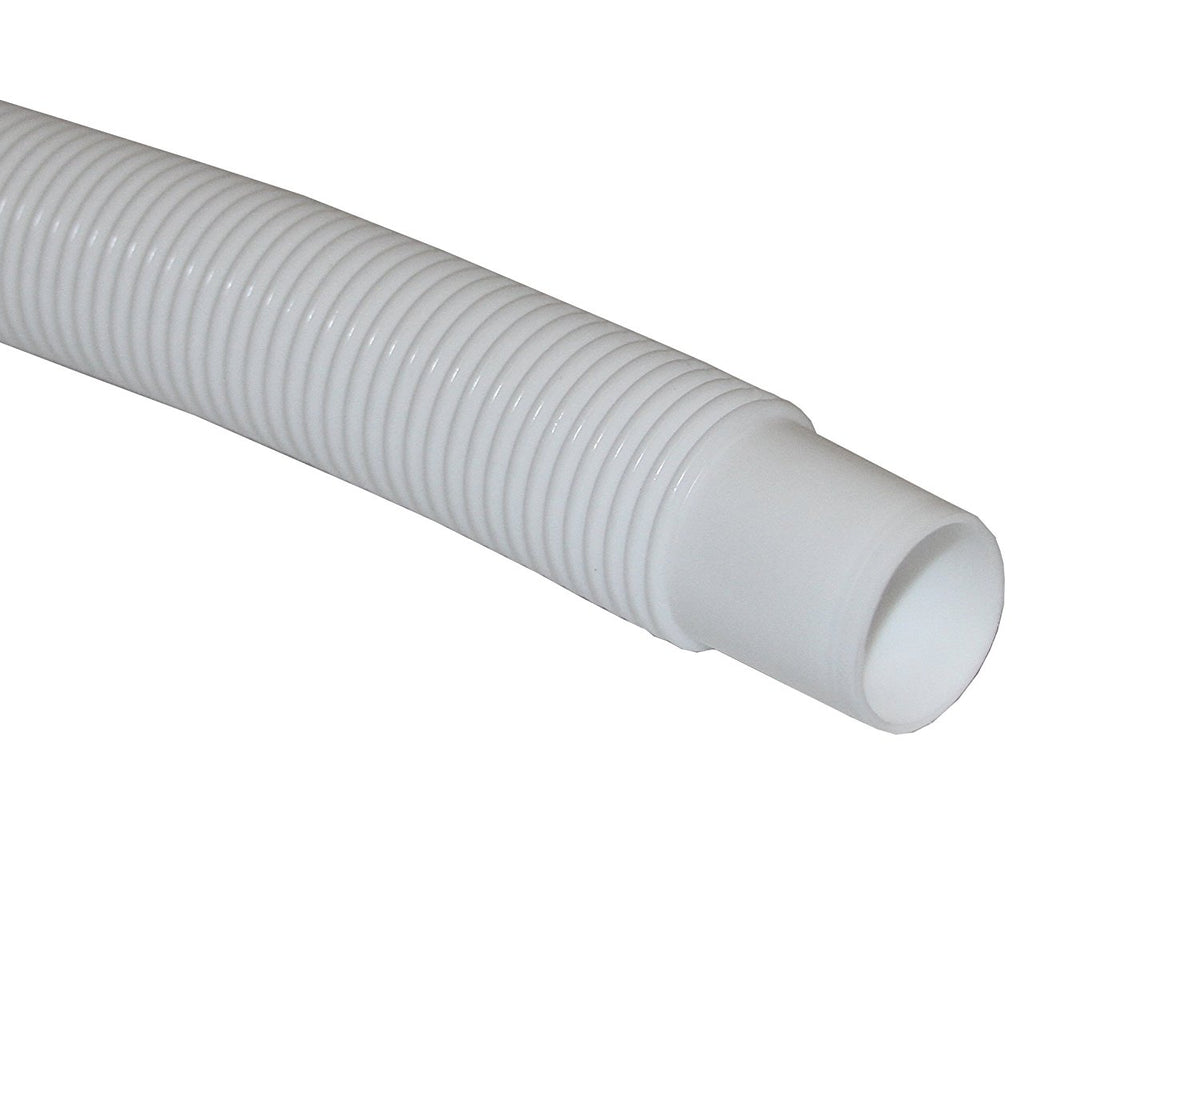 Master Plumber T34004001 Low Density Polyethylene Bilge Hose, White, 3/4"x25'